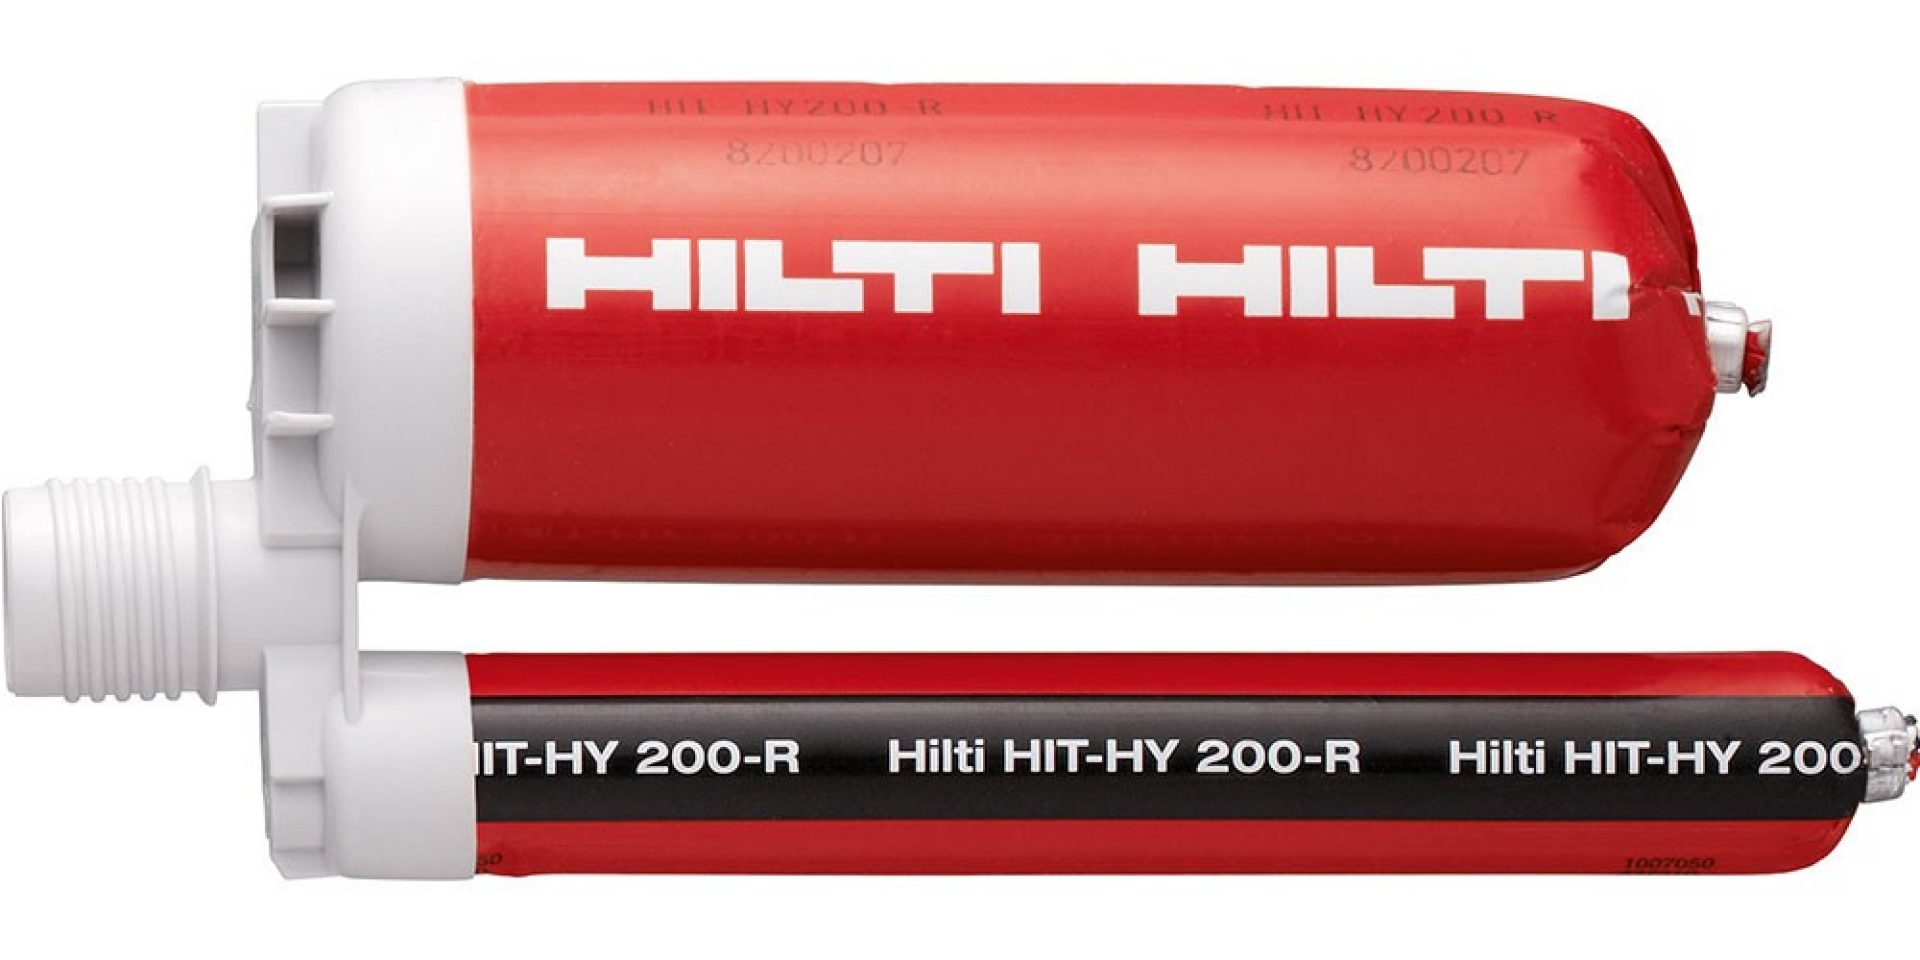 Hilti  HIT-HY 200-R